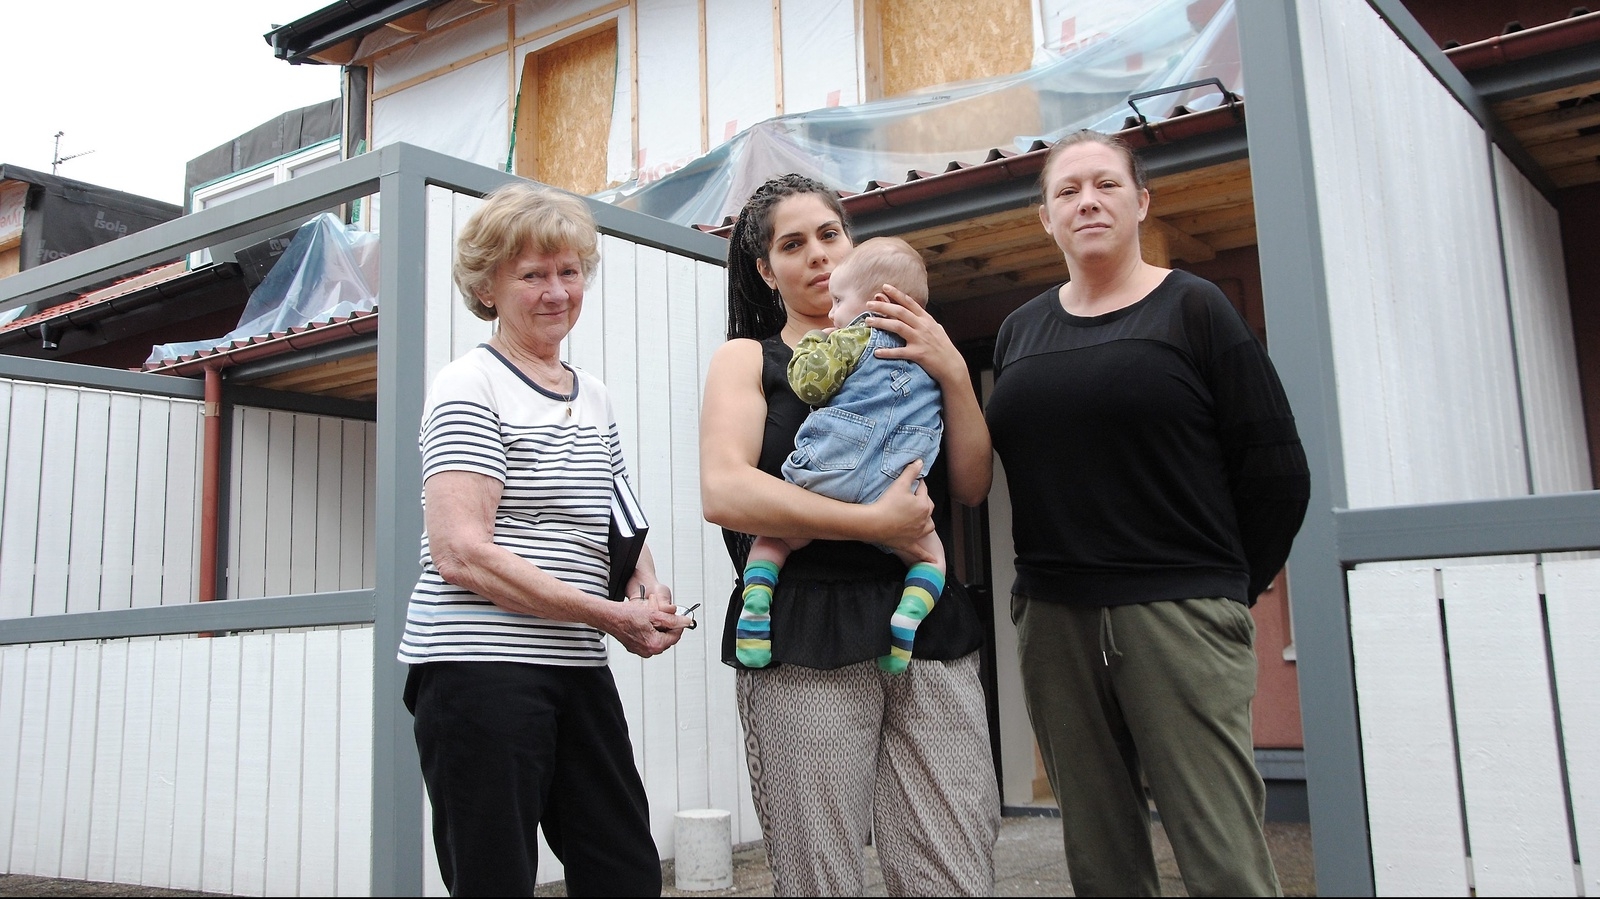 Ingrid Killberg, Susan Cederlov och Helena Dahlberg är några av de boende som gått samman för att kräva nedsättning av hyran.Foto: Kristina Höjendal